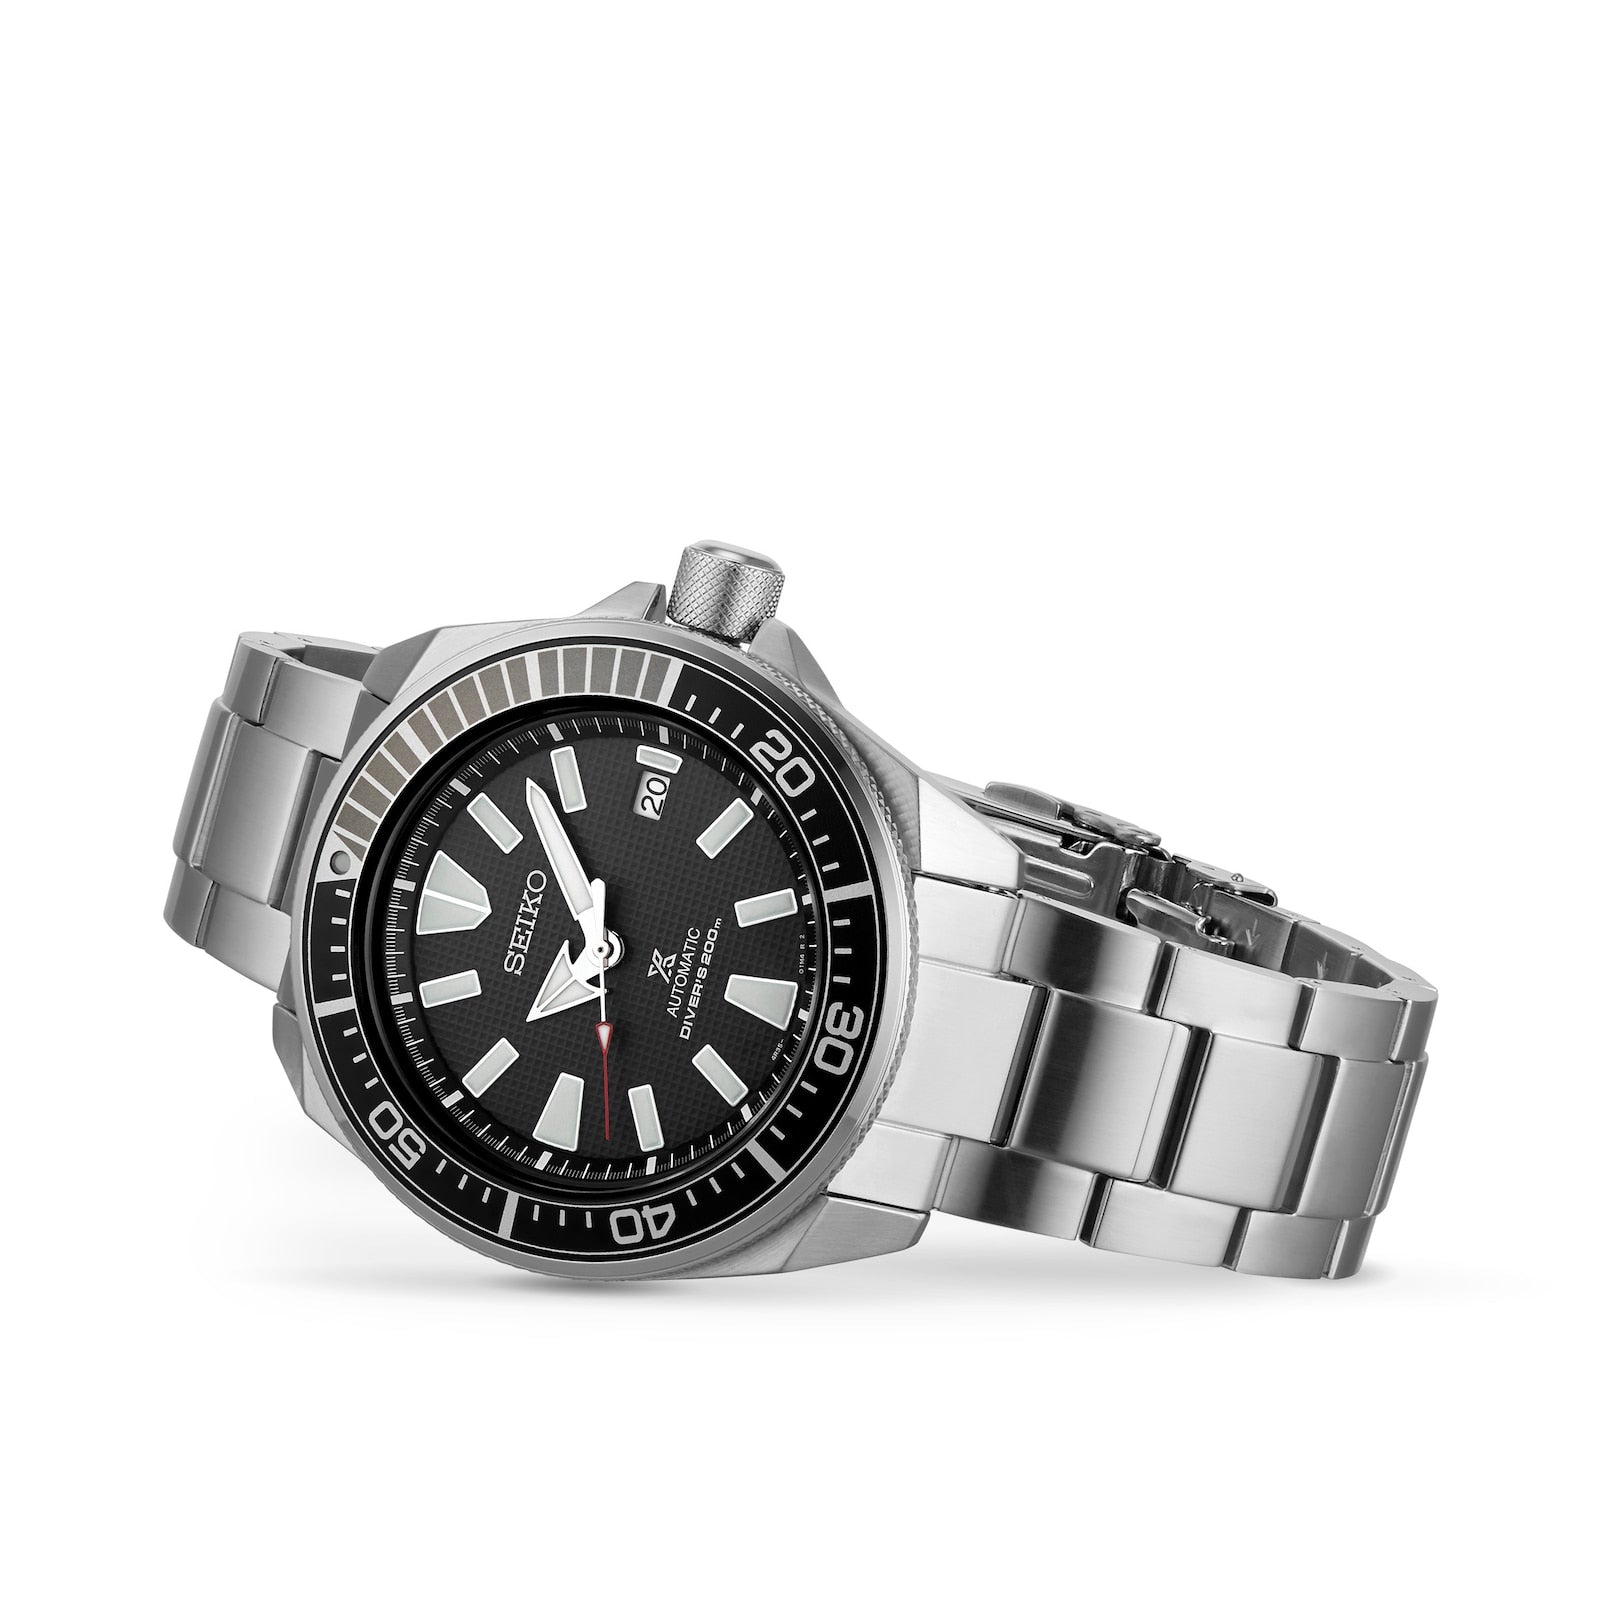 Seiko 4R35-01V0 Prospex Men's Watch - Silver